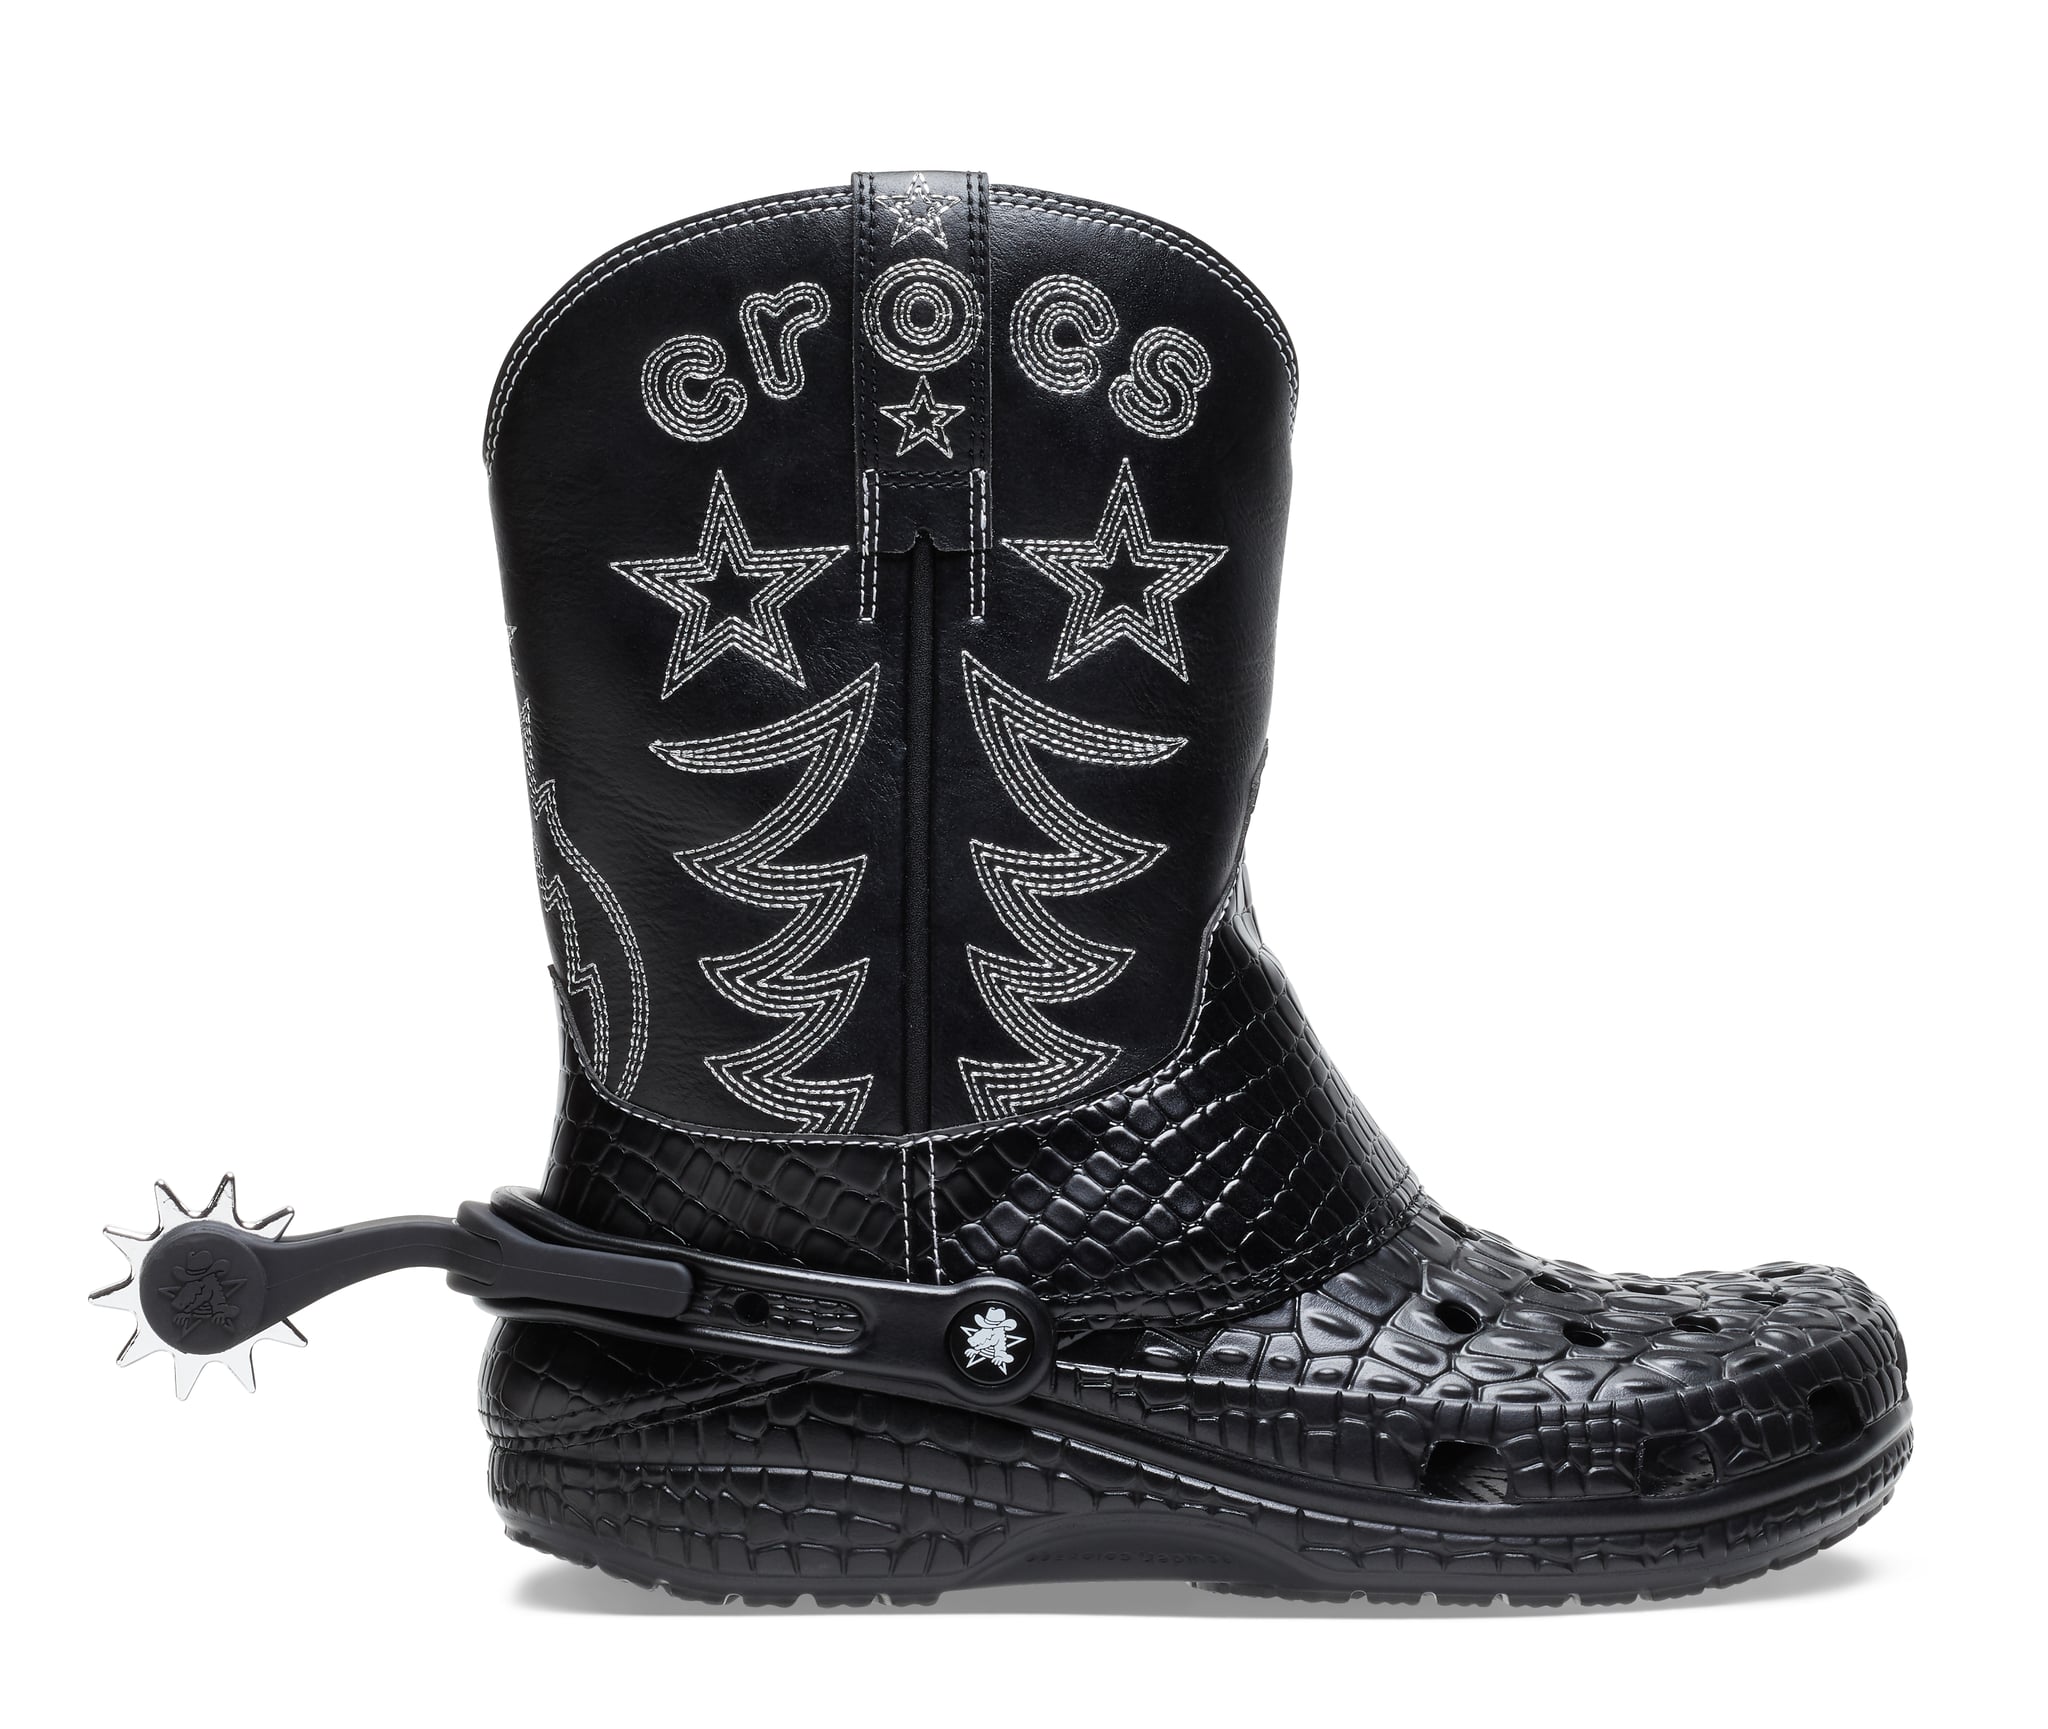 Crocs cowboy boots